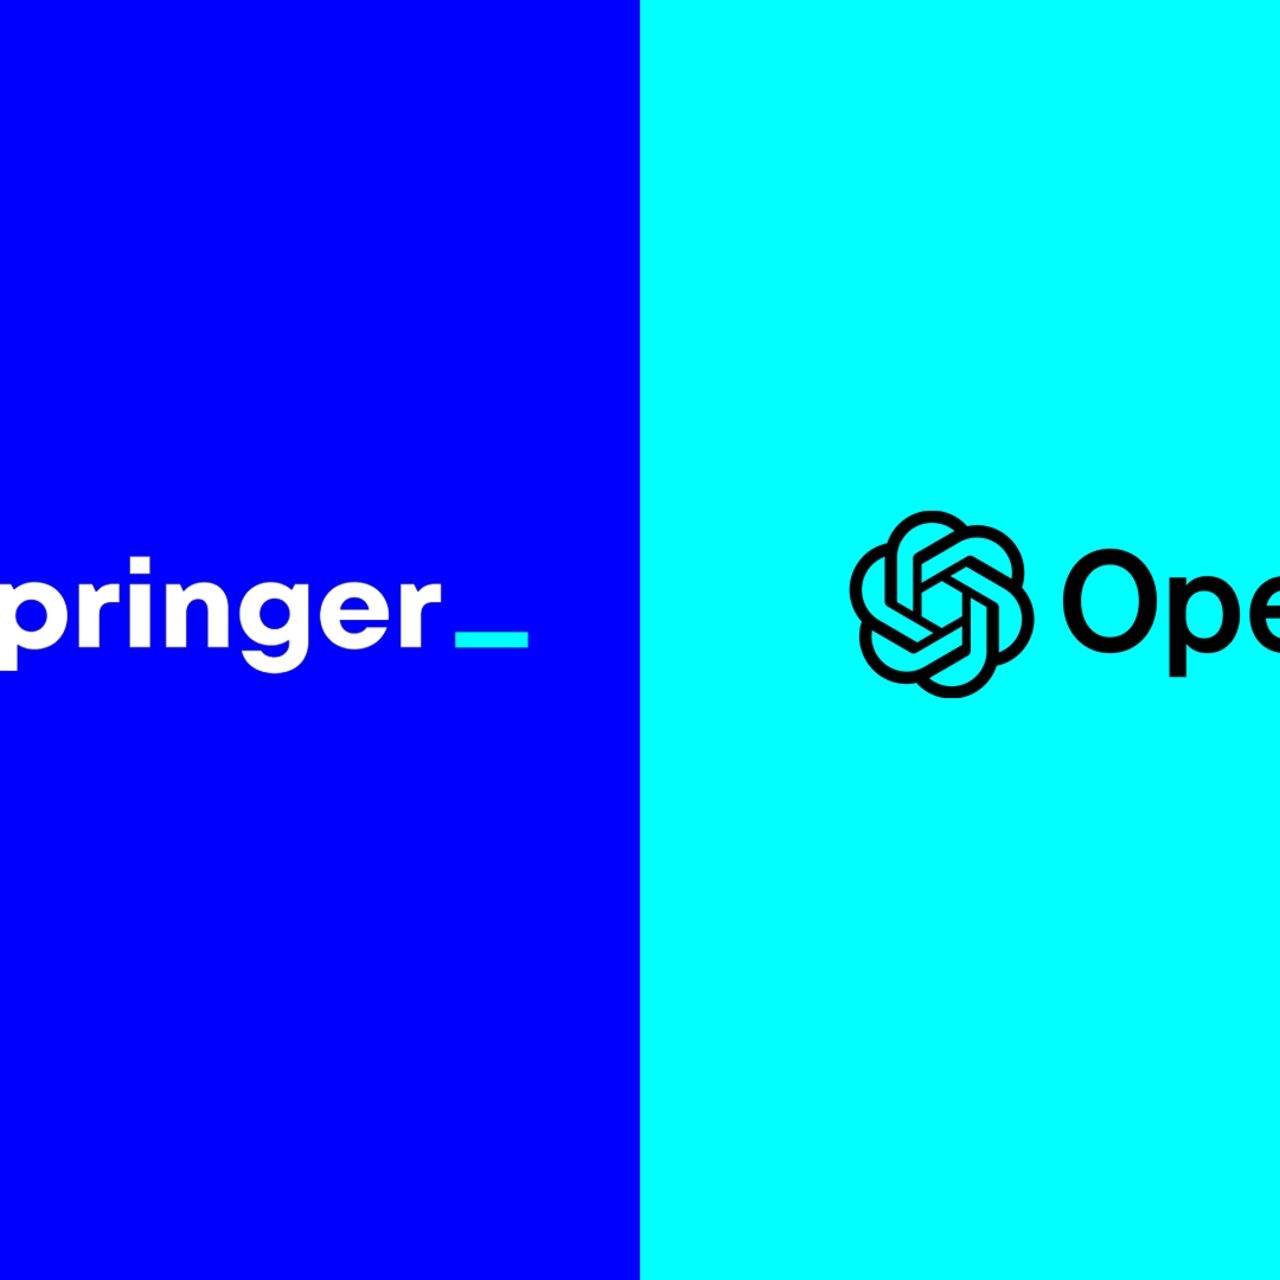 Giornalismo: Axel Springer e OpenAI hanno annunciato una partnership globale per rafforzare il giornalismo indipendente nell'era dell'intelligenza artificiale